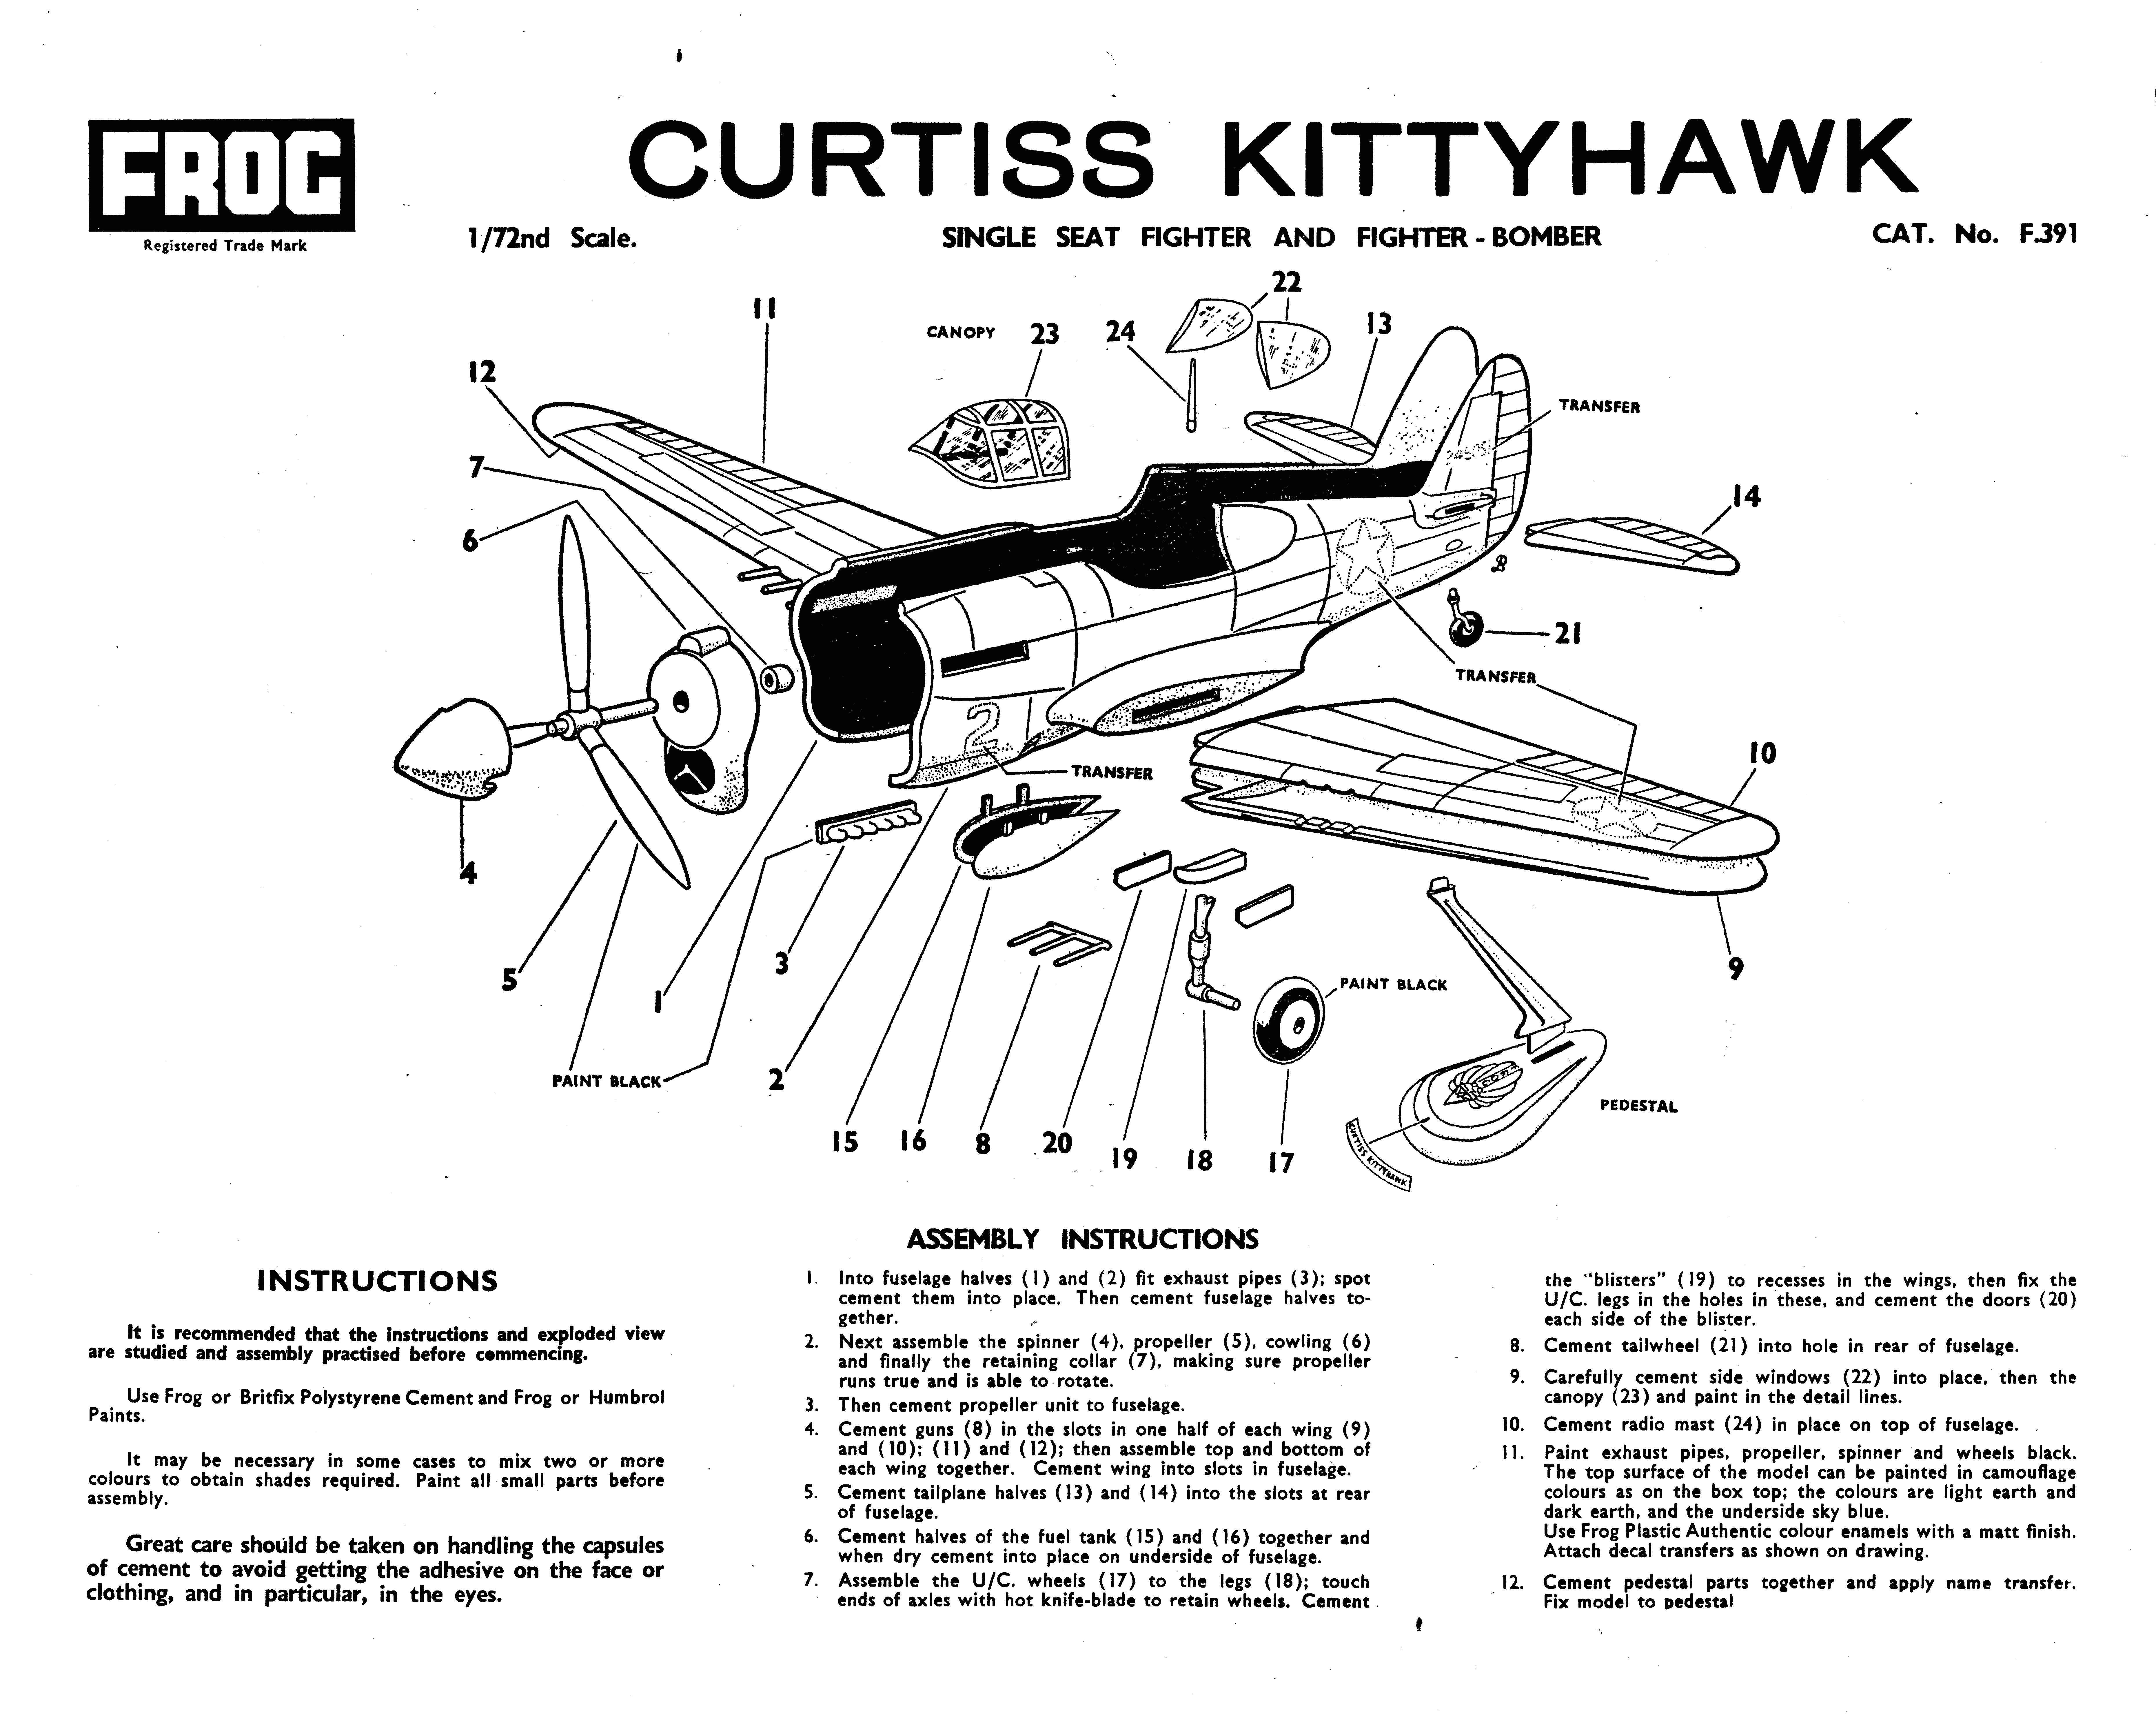 Инструкция по сборке FROG F391 Curtiss P-40E Warhawk (Kittyhawk IA), Black series, Rovex Industries Ltd, 1966-67